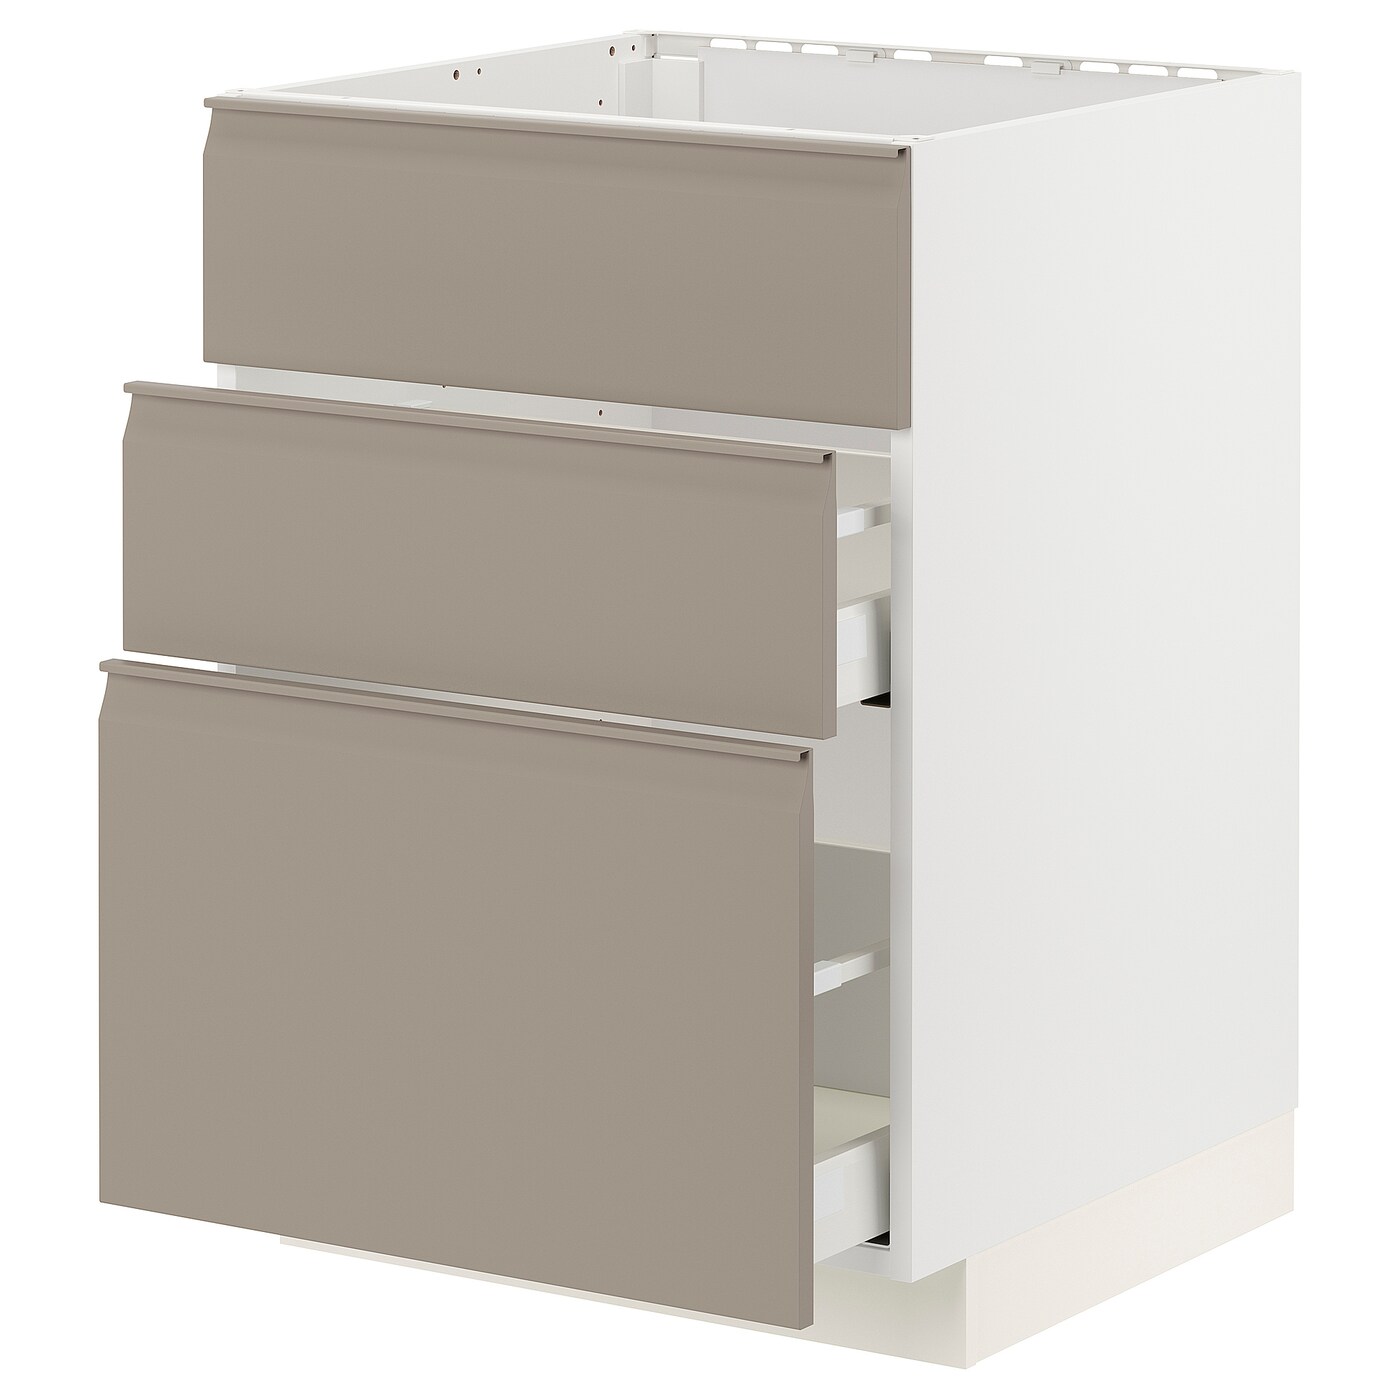 Напольный кухонный шкаф  - IKEA METOD MAXIMERA, 88x61,6x60см, белый/темно-бежевый, МЕТОД МАКСИМЕРА ИКЕА